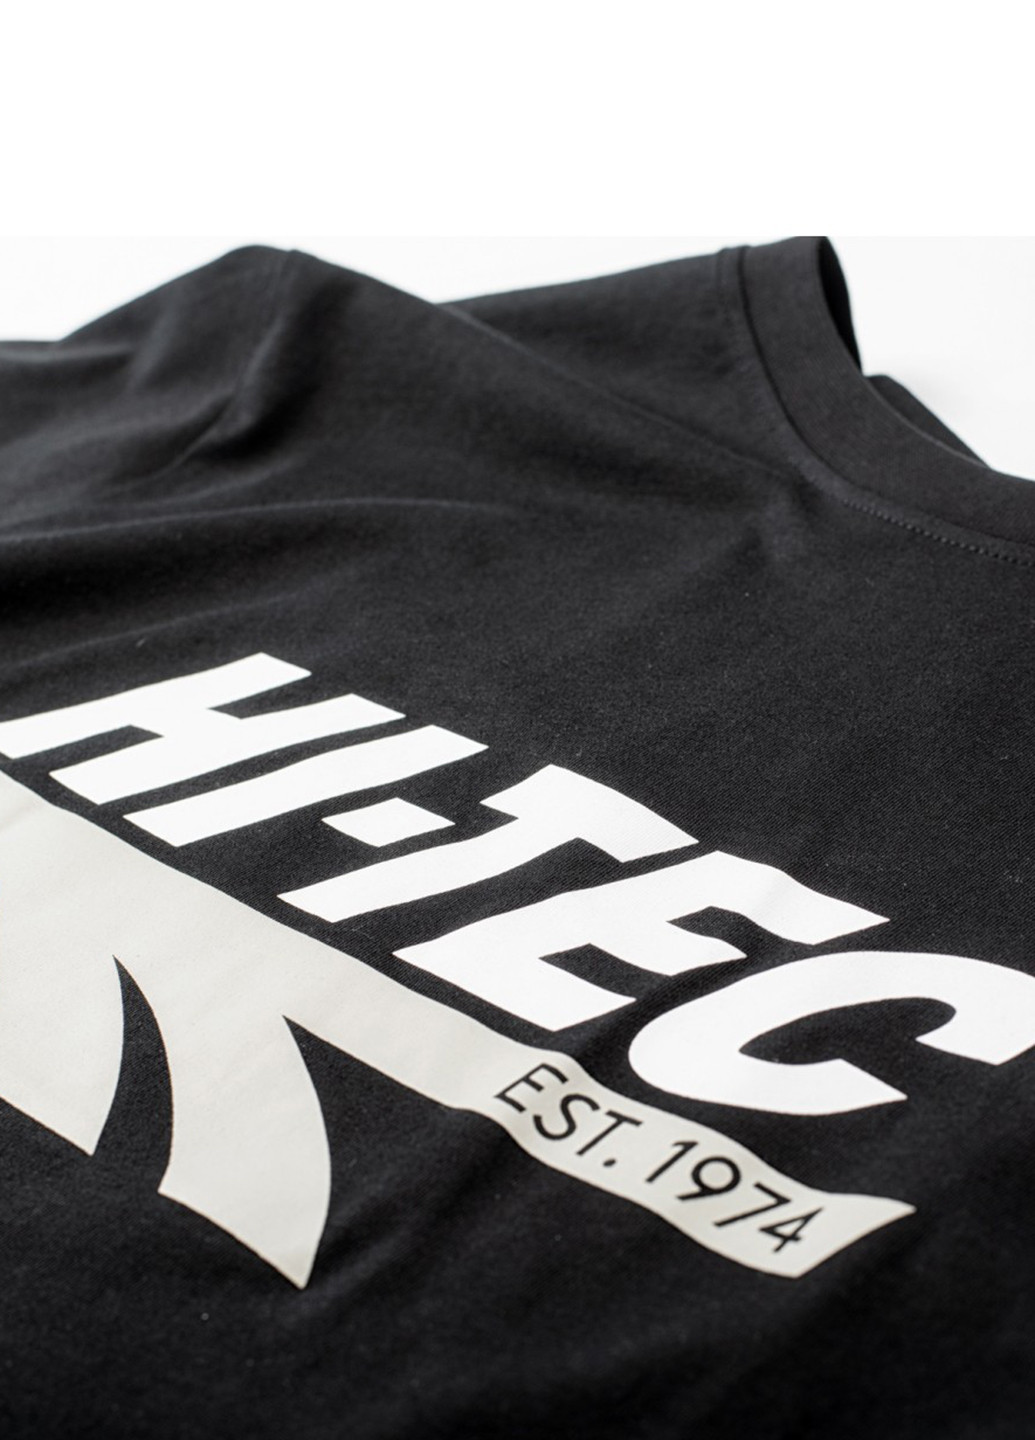 Чорна футболка Hi-Tec